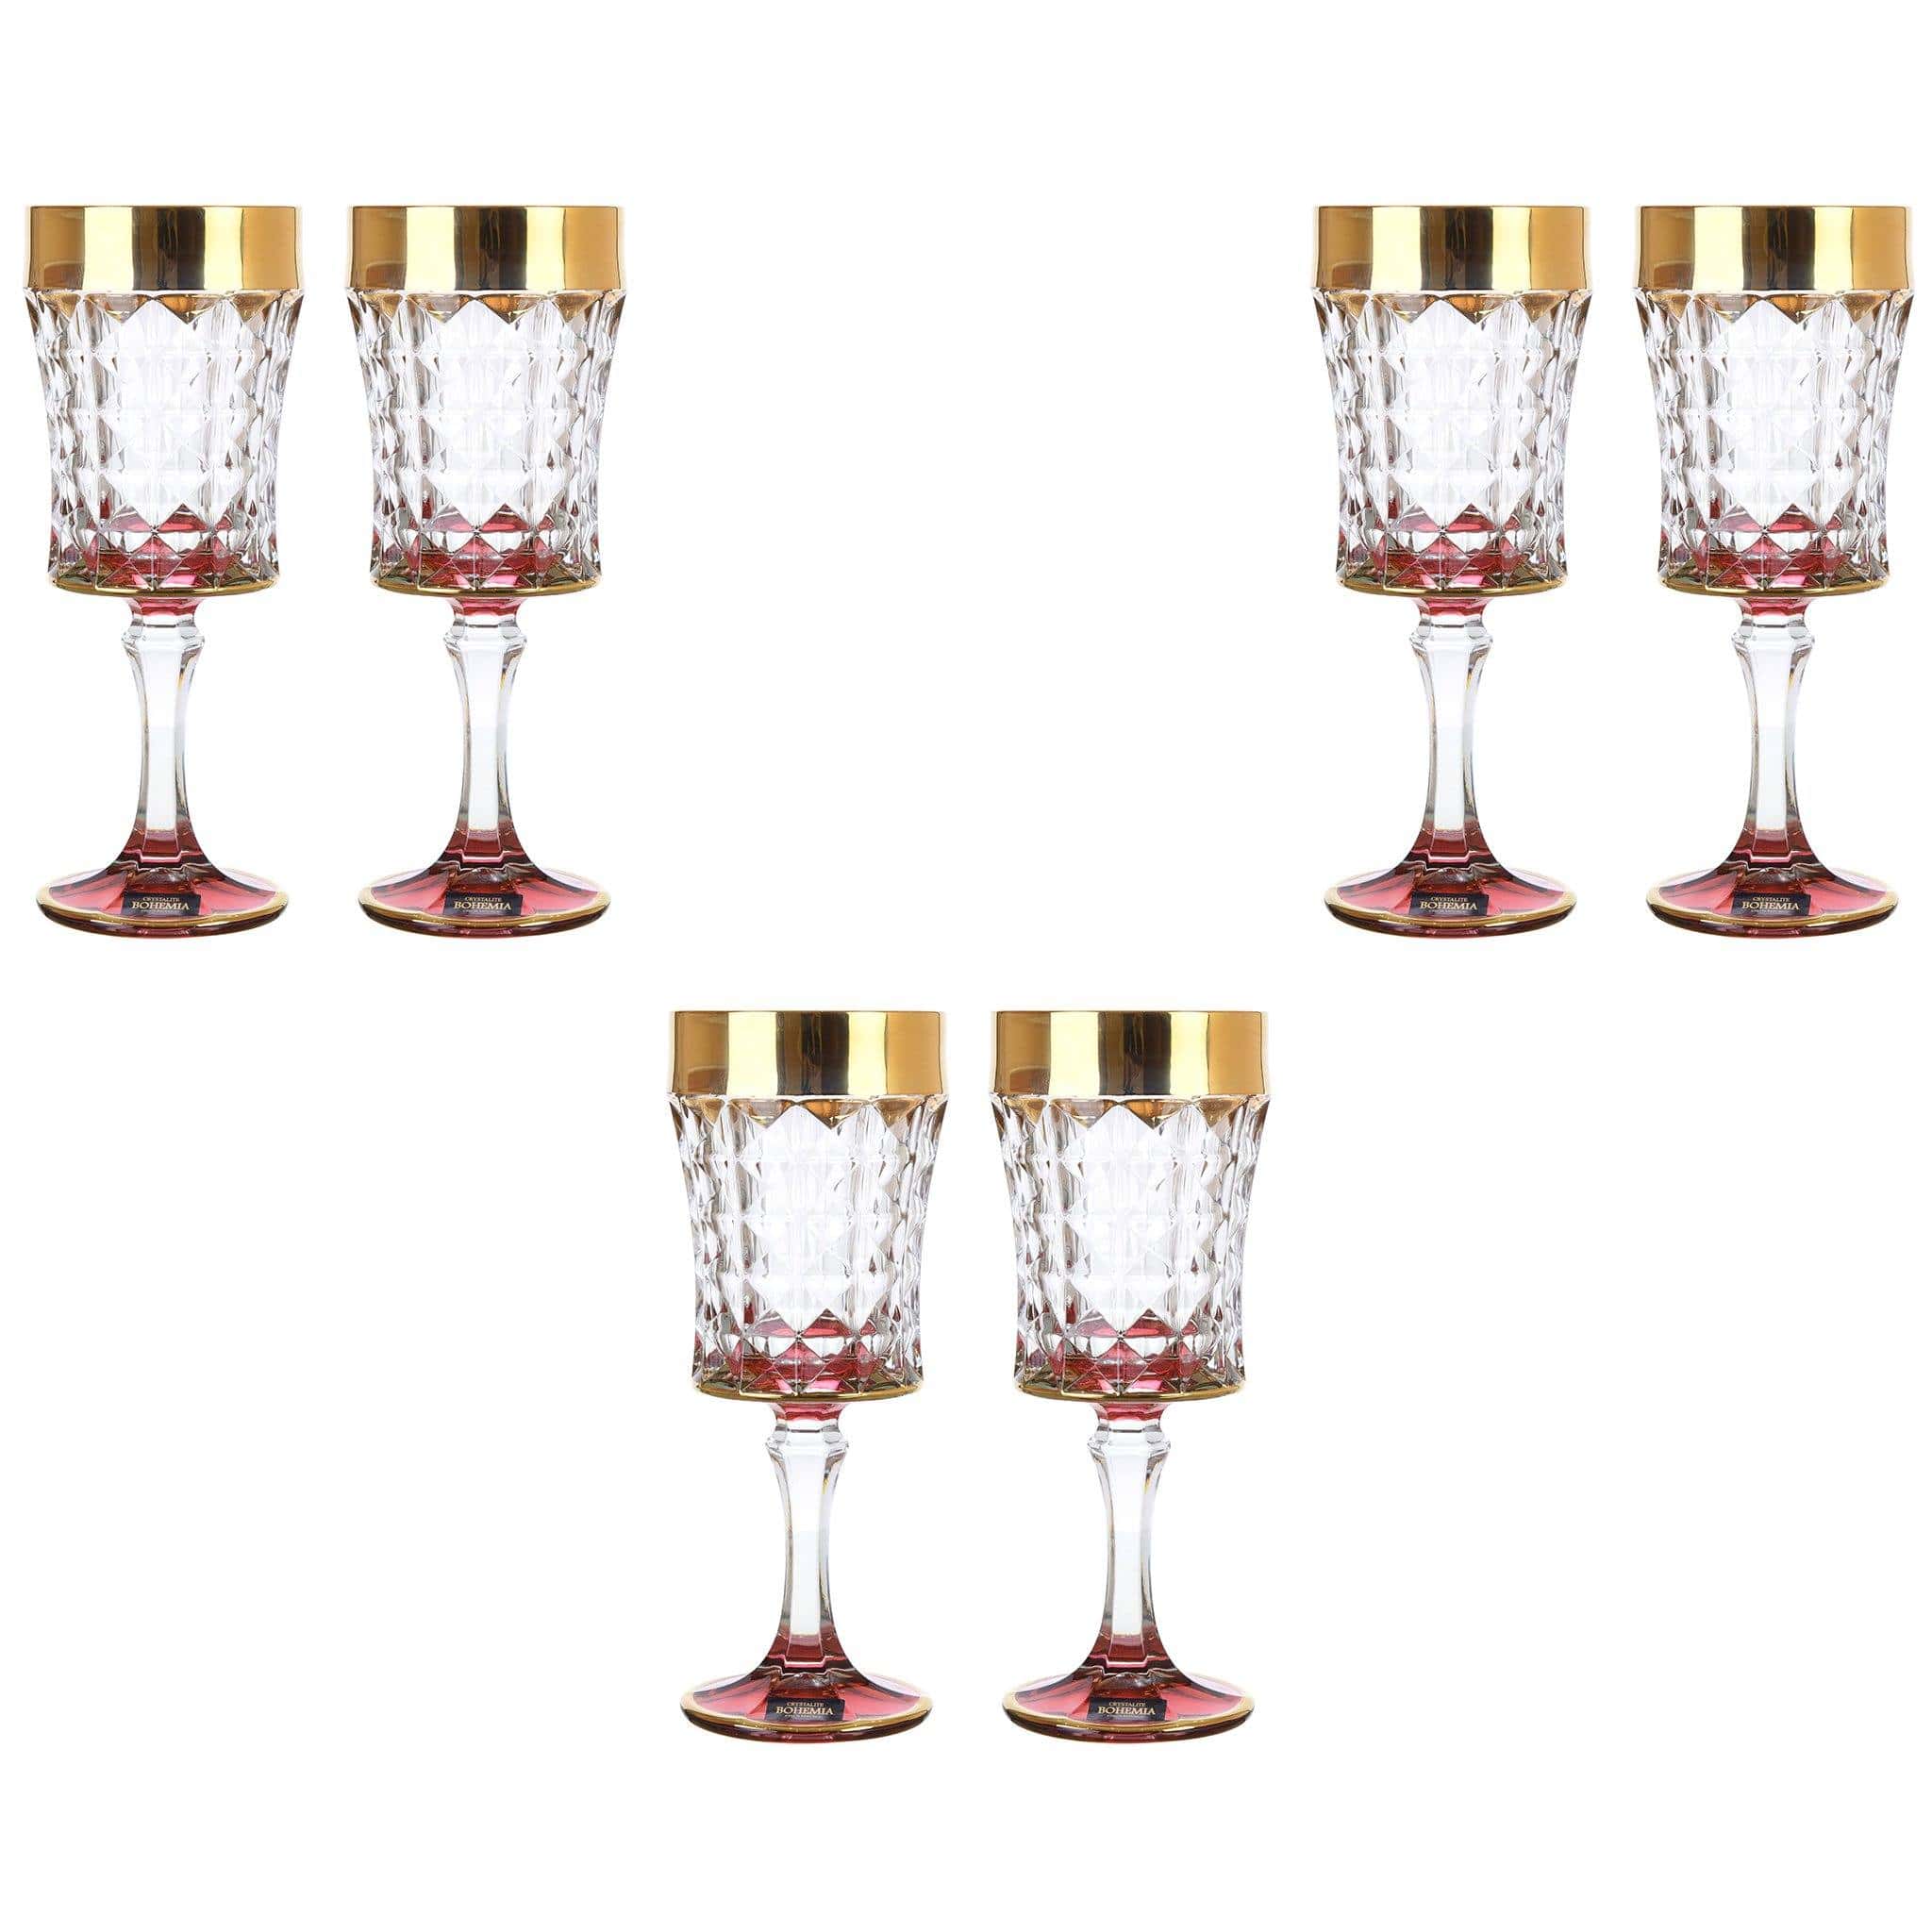 بوهيميا كريستال - طقم أكواب 6 قطع زجاج - ذهبي وأحمر - 200 مل - 2700010489